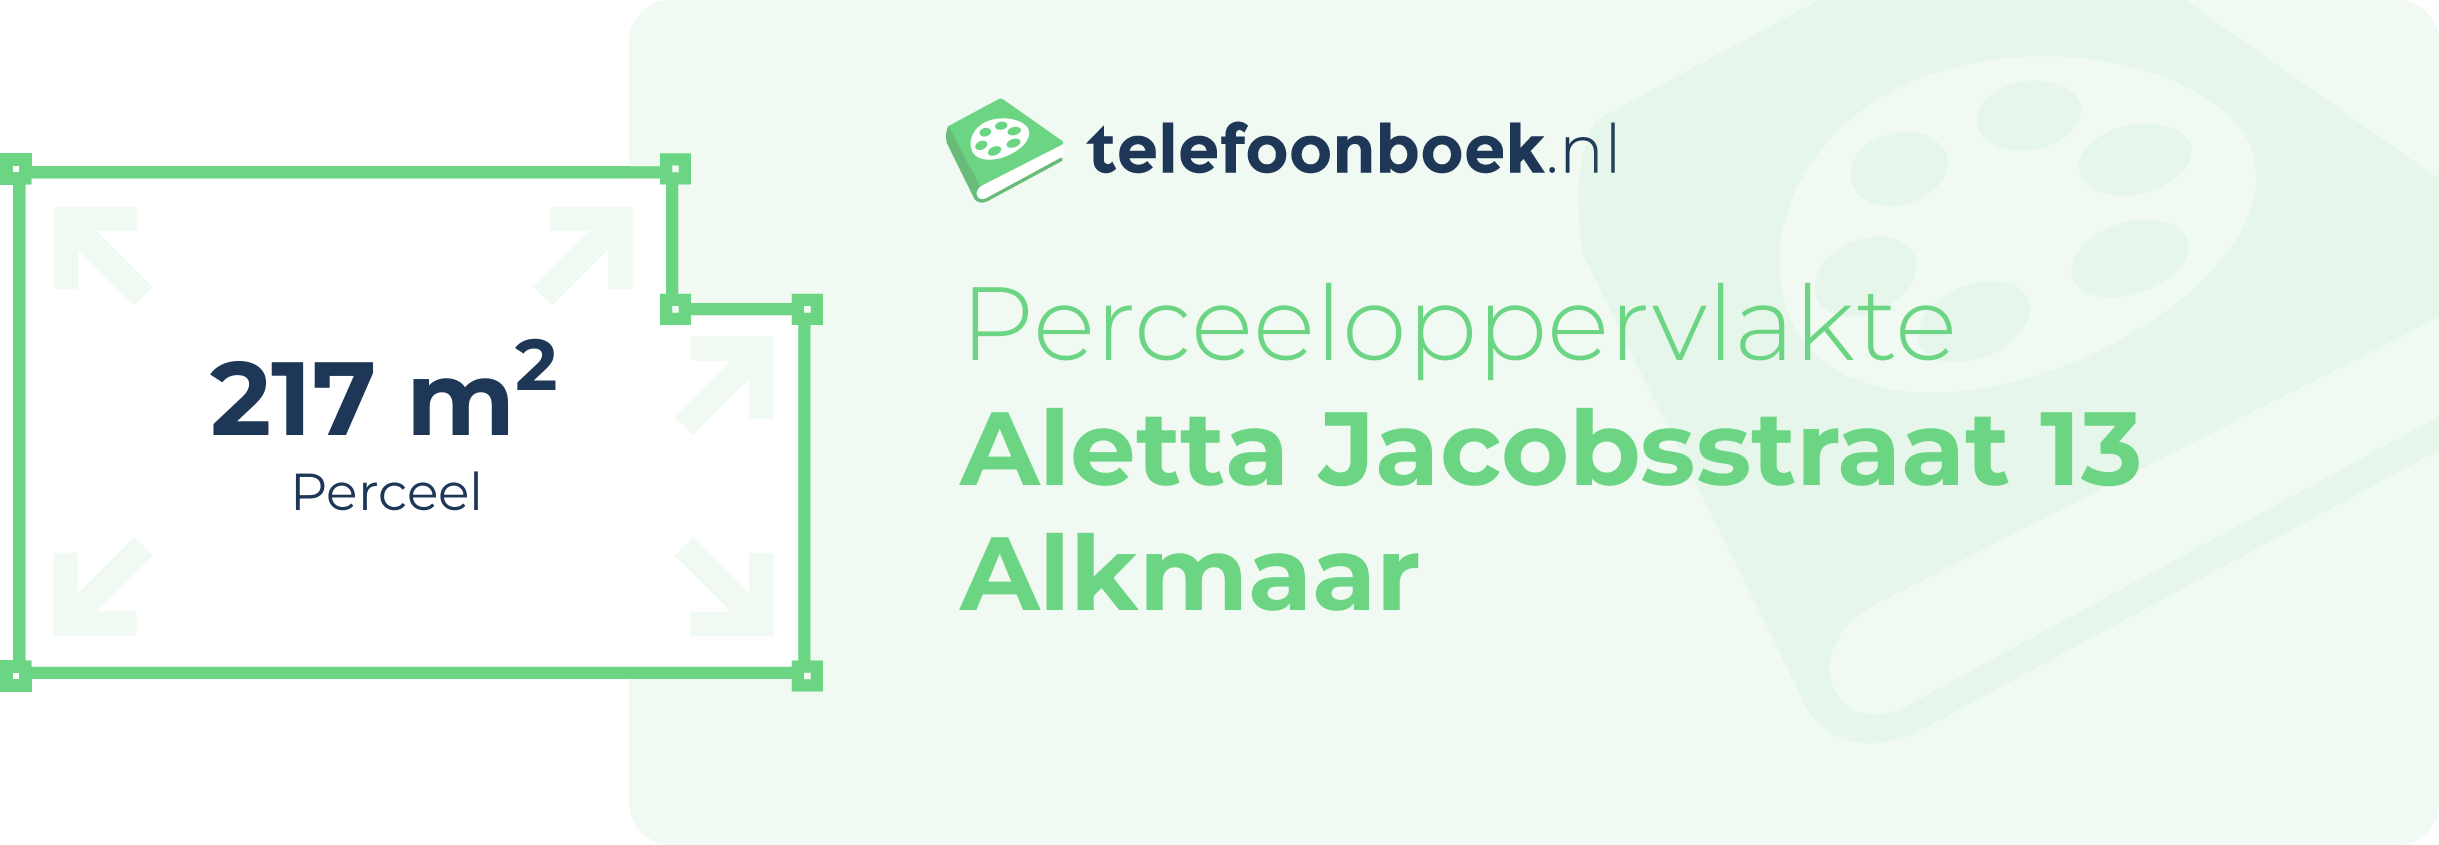 Perceeloppervlakte Aletta Jacobsstraat 13 Alkmaar